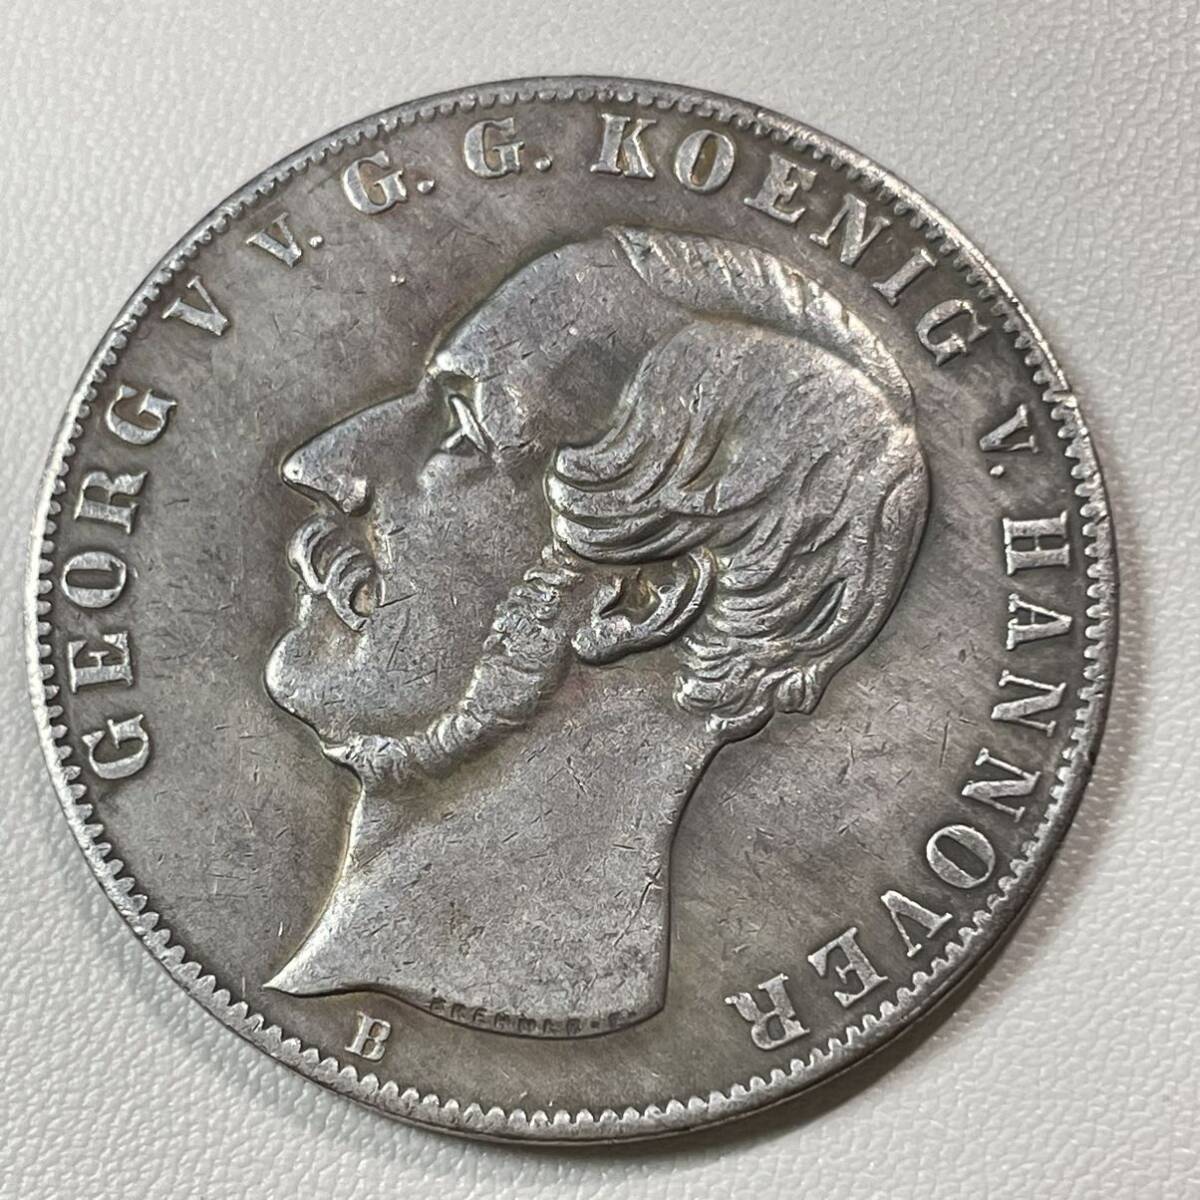 ドイツ 硬貨 古銭 ハノーバー王国 1855年 ゲオルク・ジョージ5世 ライオン ニコーン クラウン 紋章 コイン 重25.56g_画像2